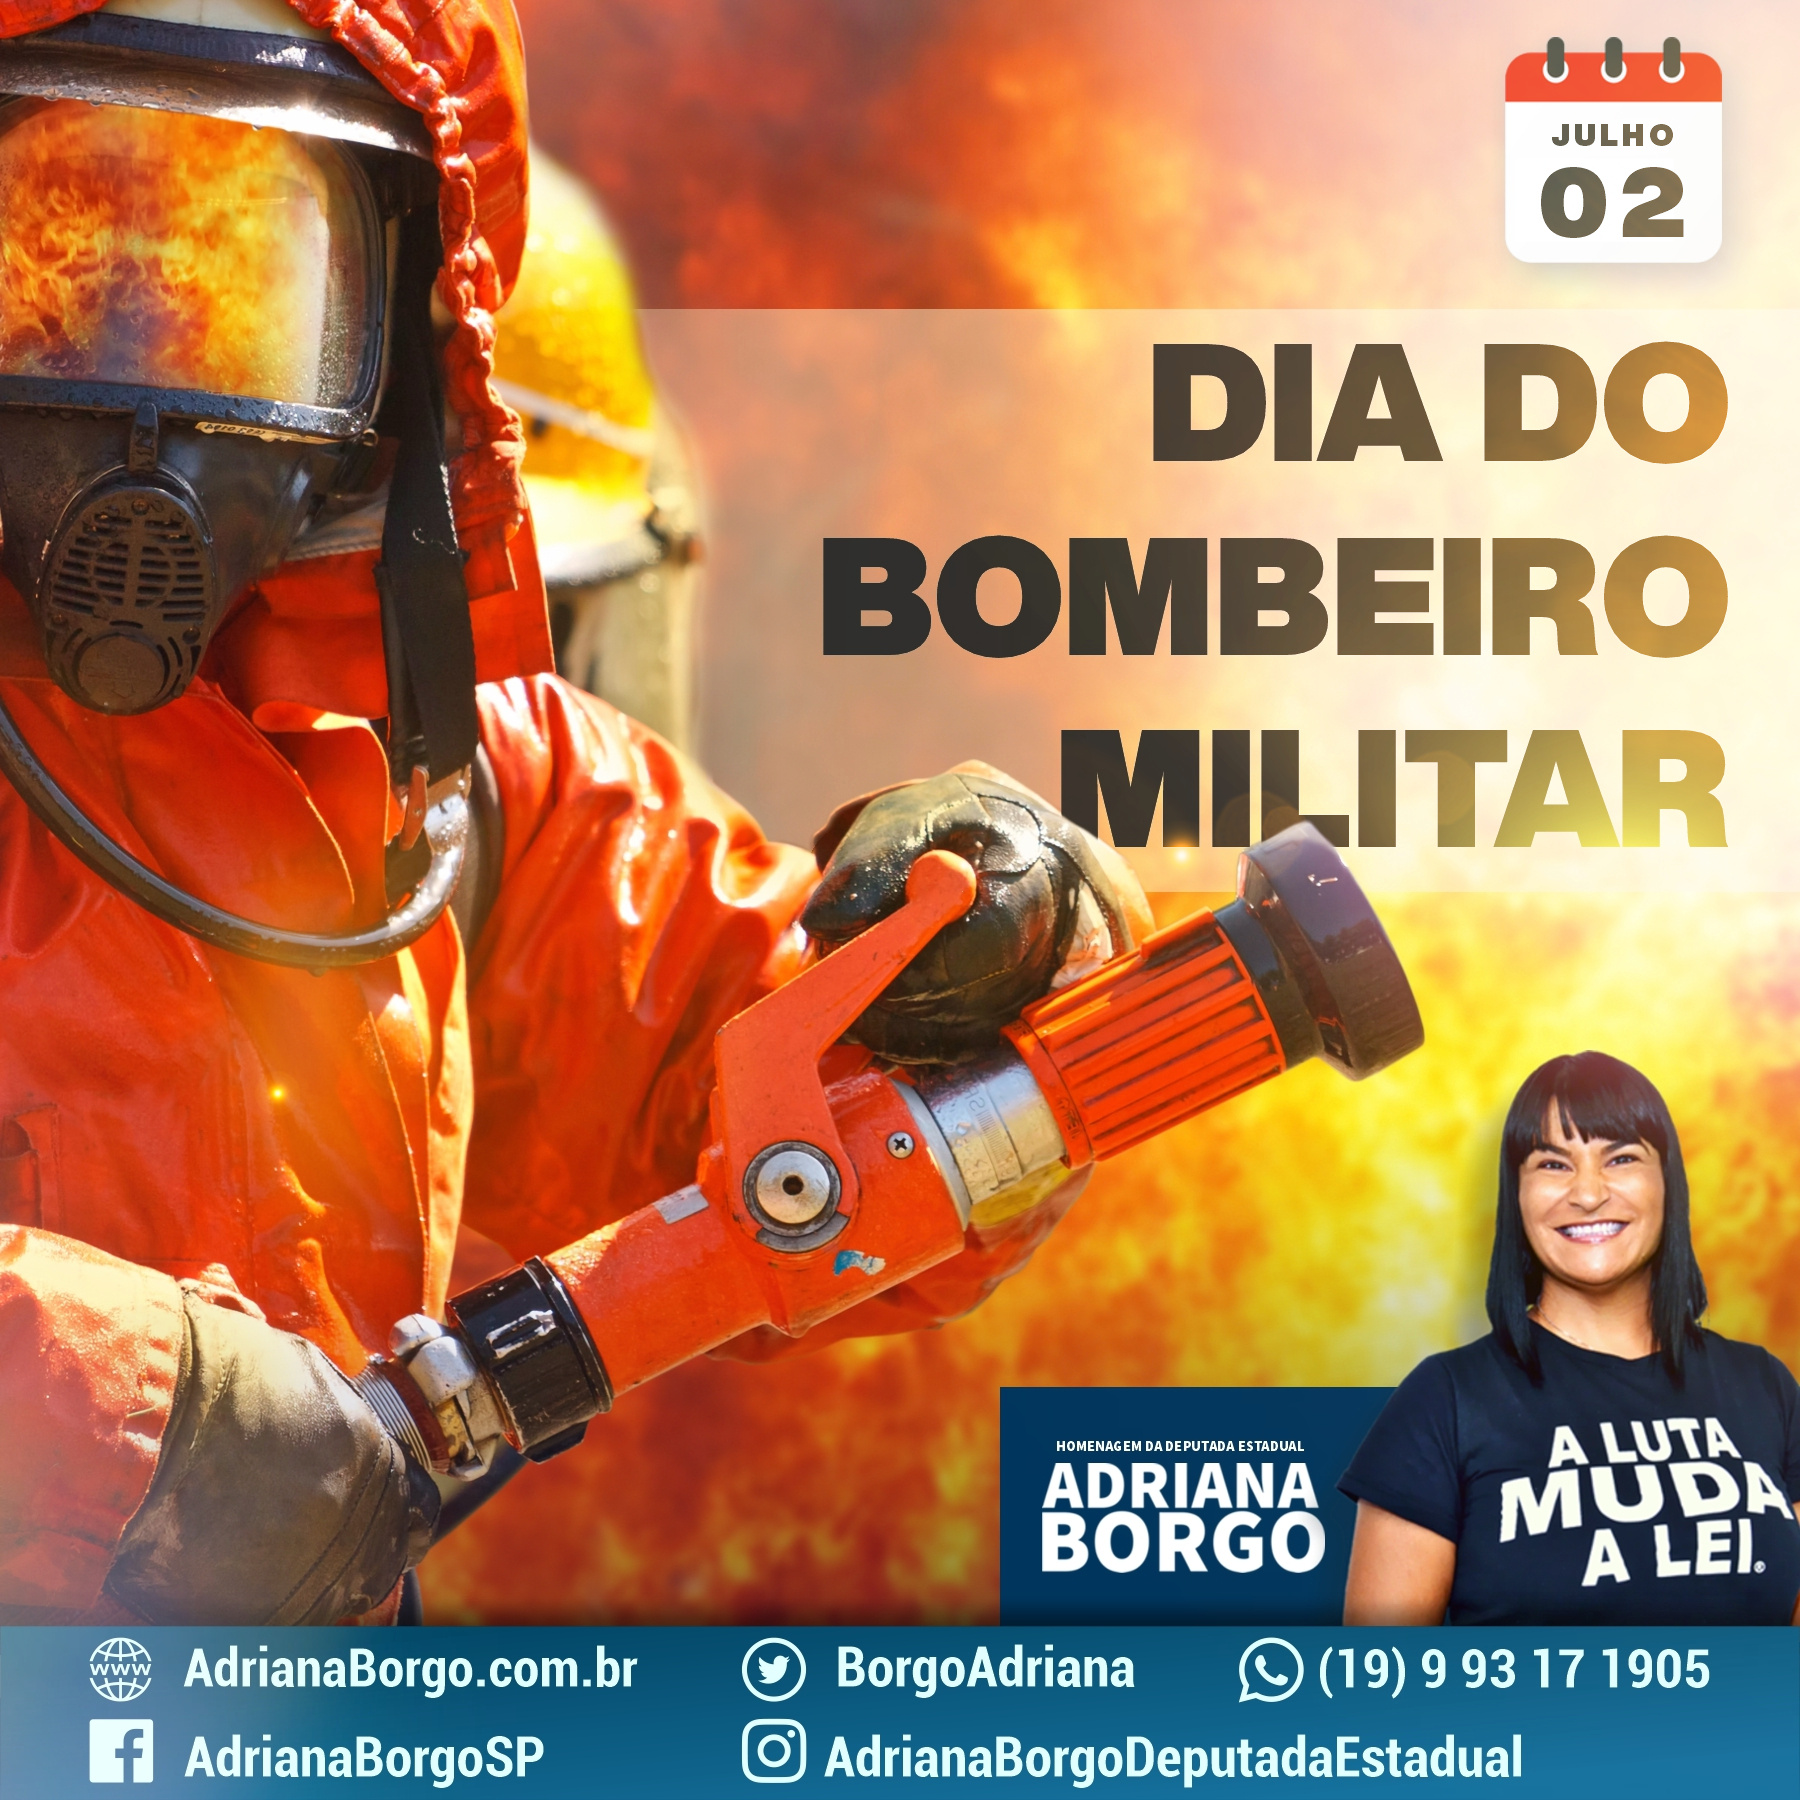 Adriana Borgo - Dia do Bombeiro Militar 2020